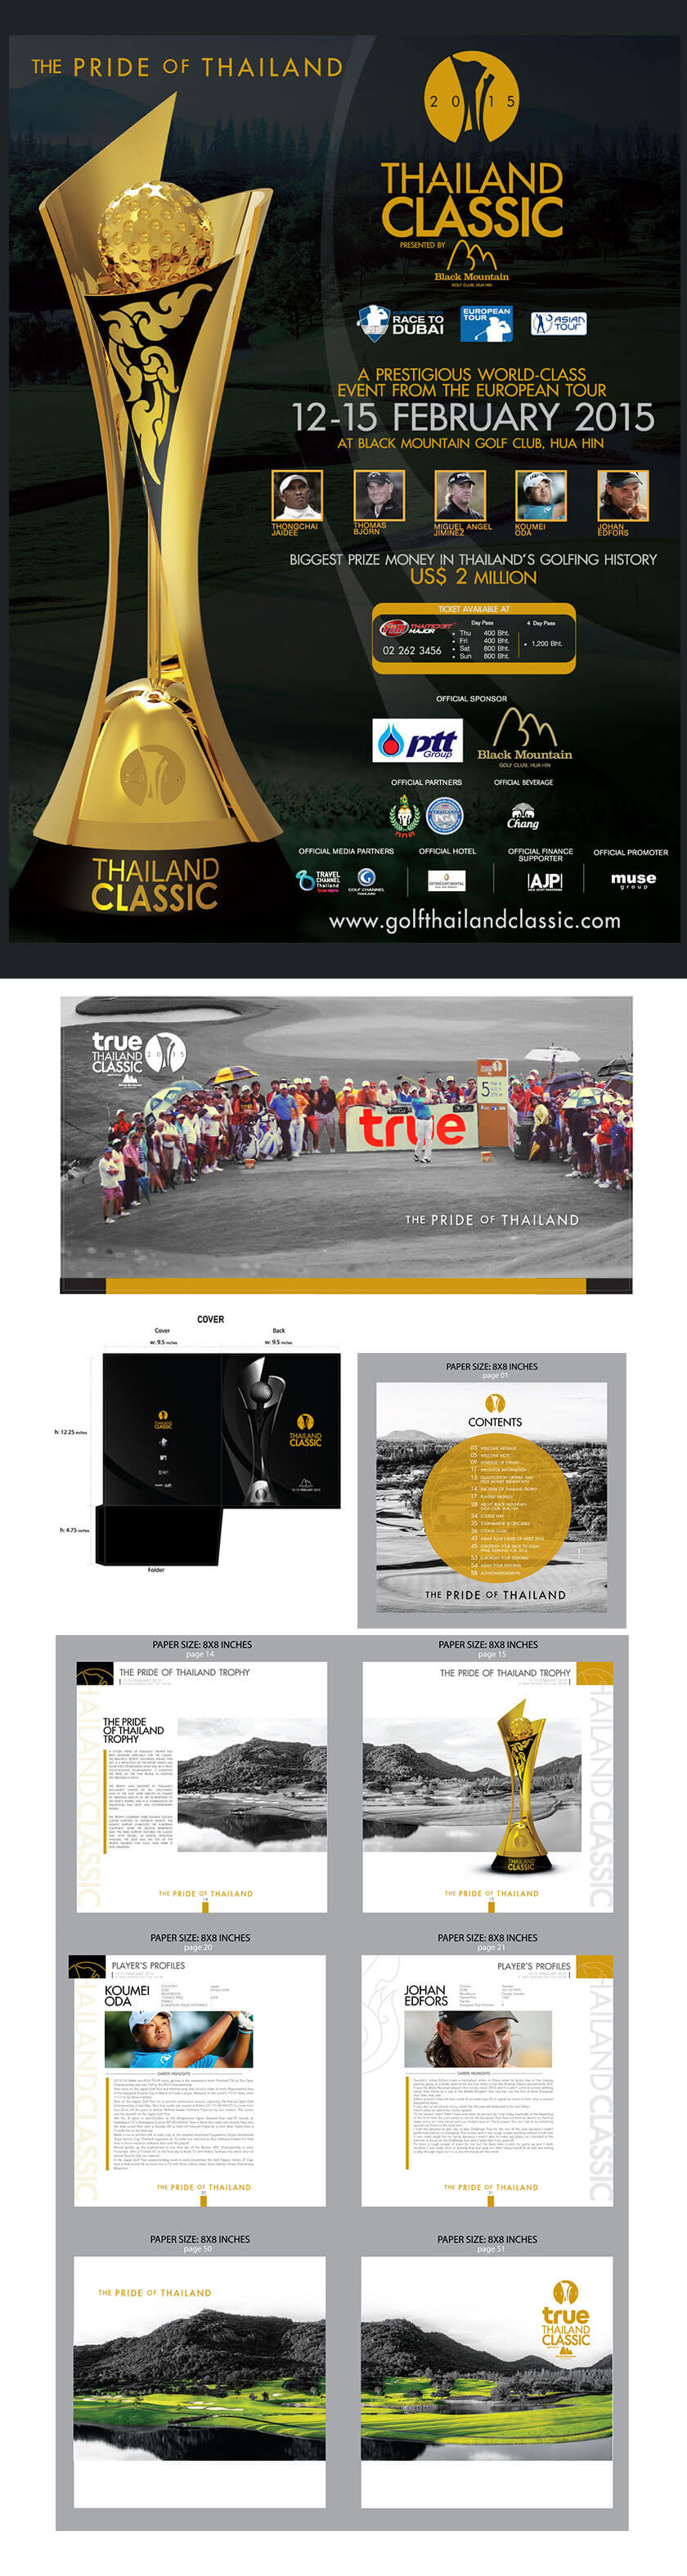 ออกแบบ Keyvisual ใช้ในงาน Golf | MeDee - บริษัทรับทำเว็บไซต์ กราฟฟิกดีไซน์